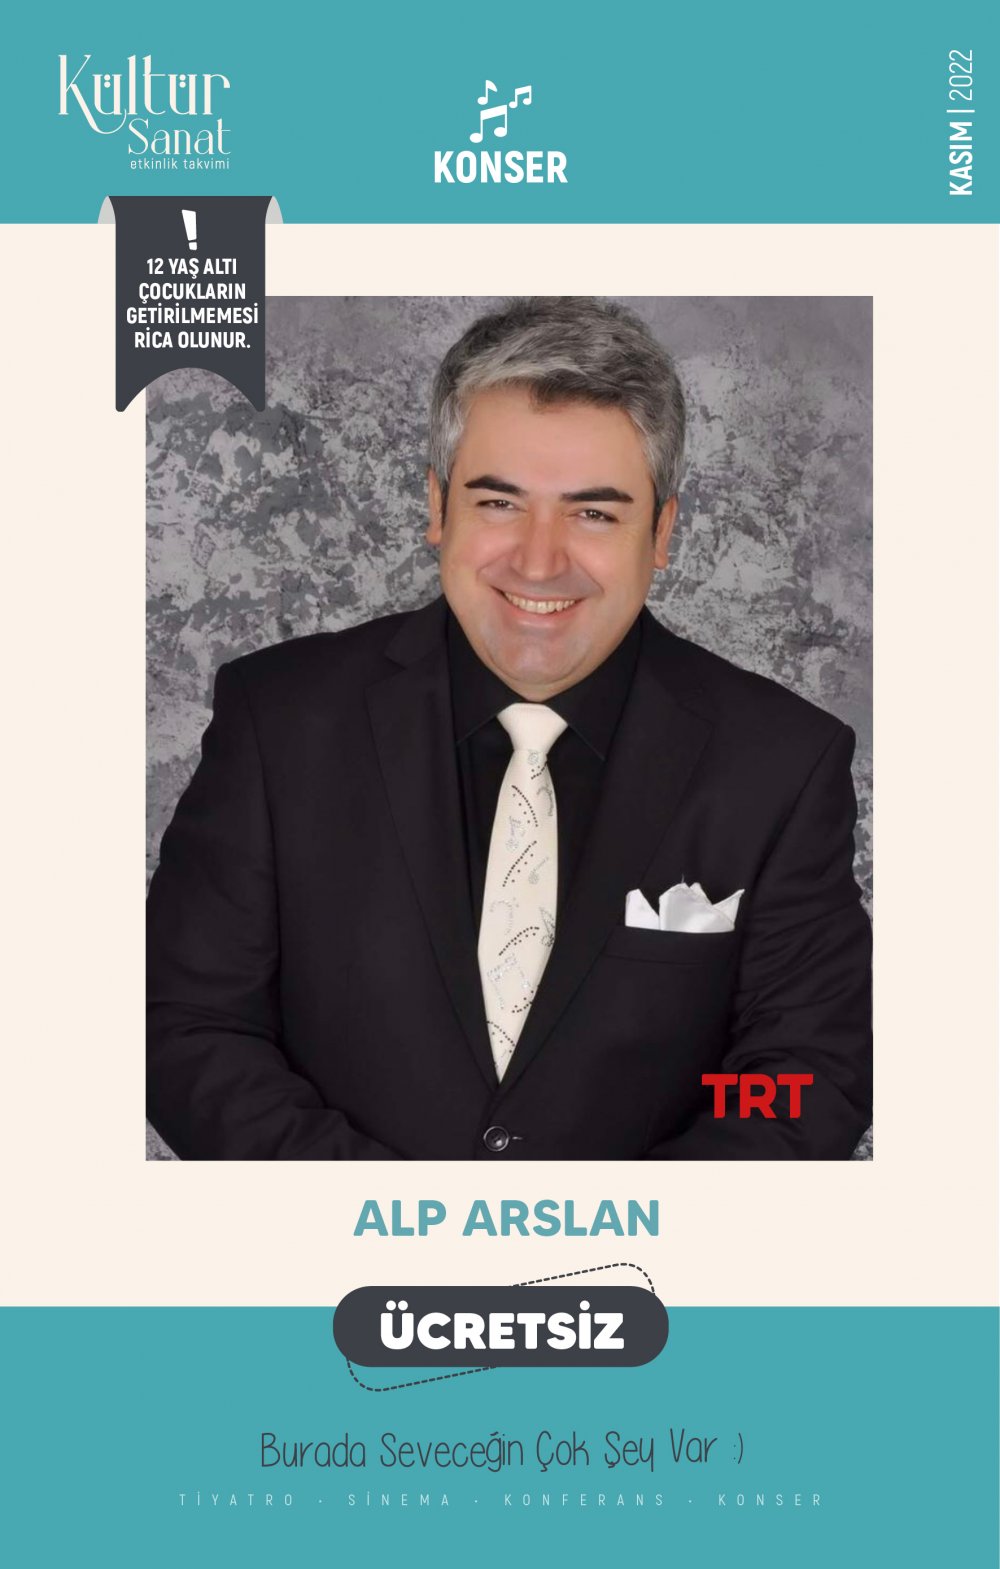 Alp Arslan